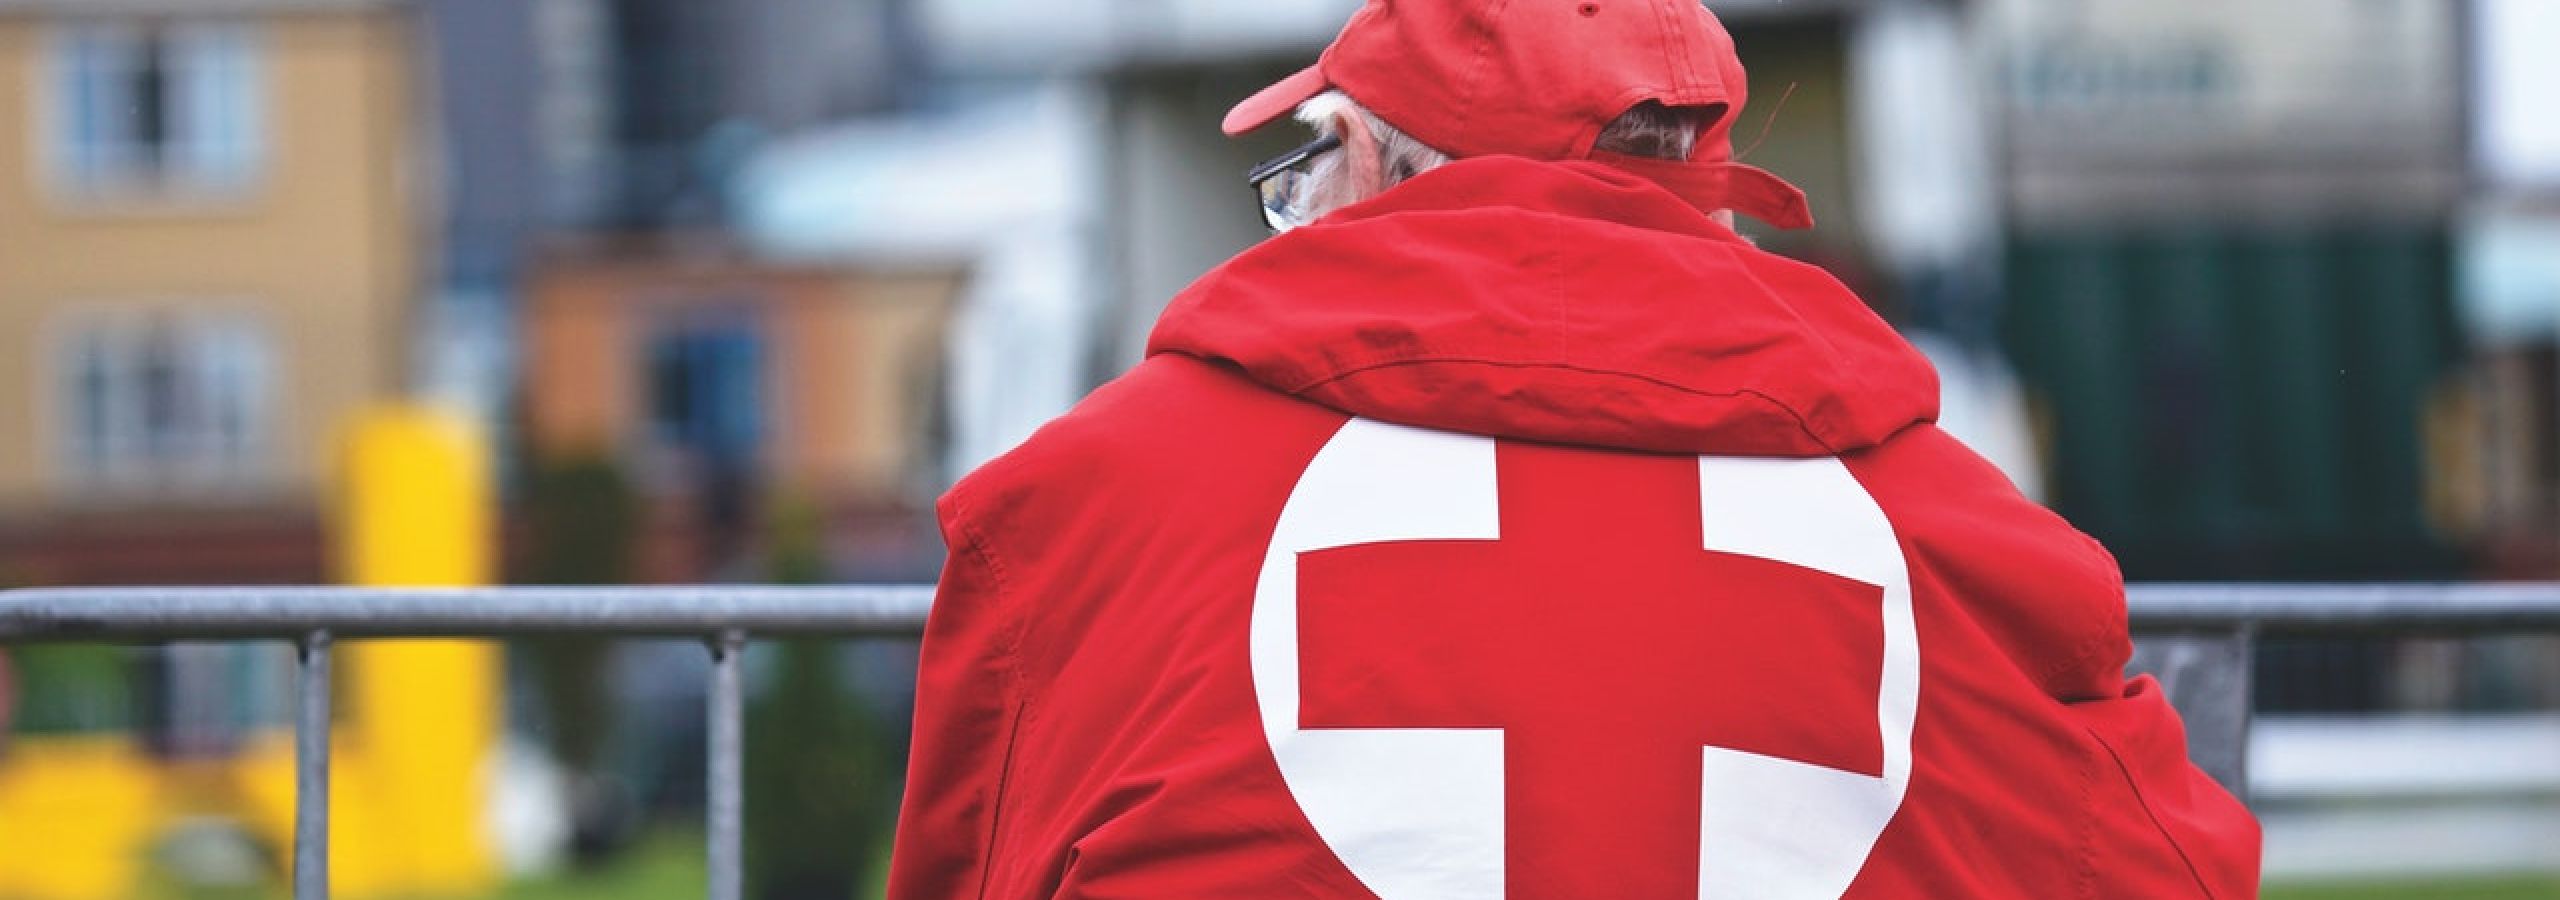 red cross worker